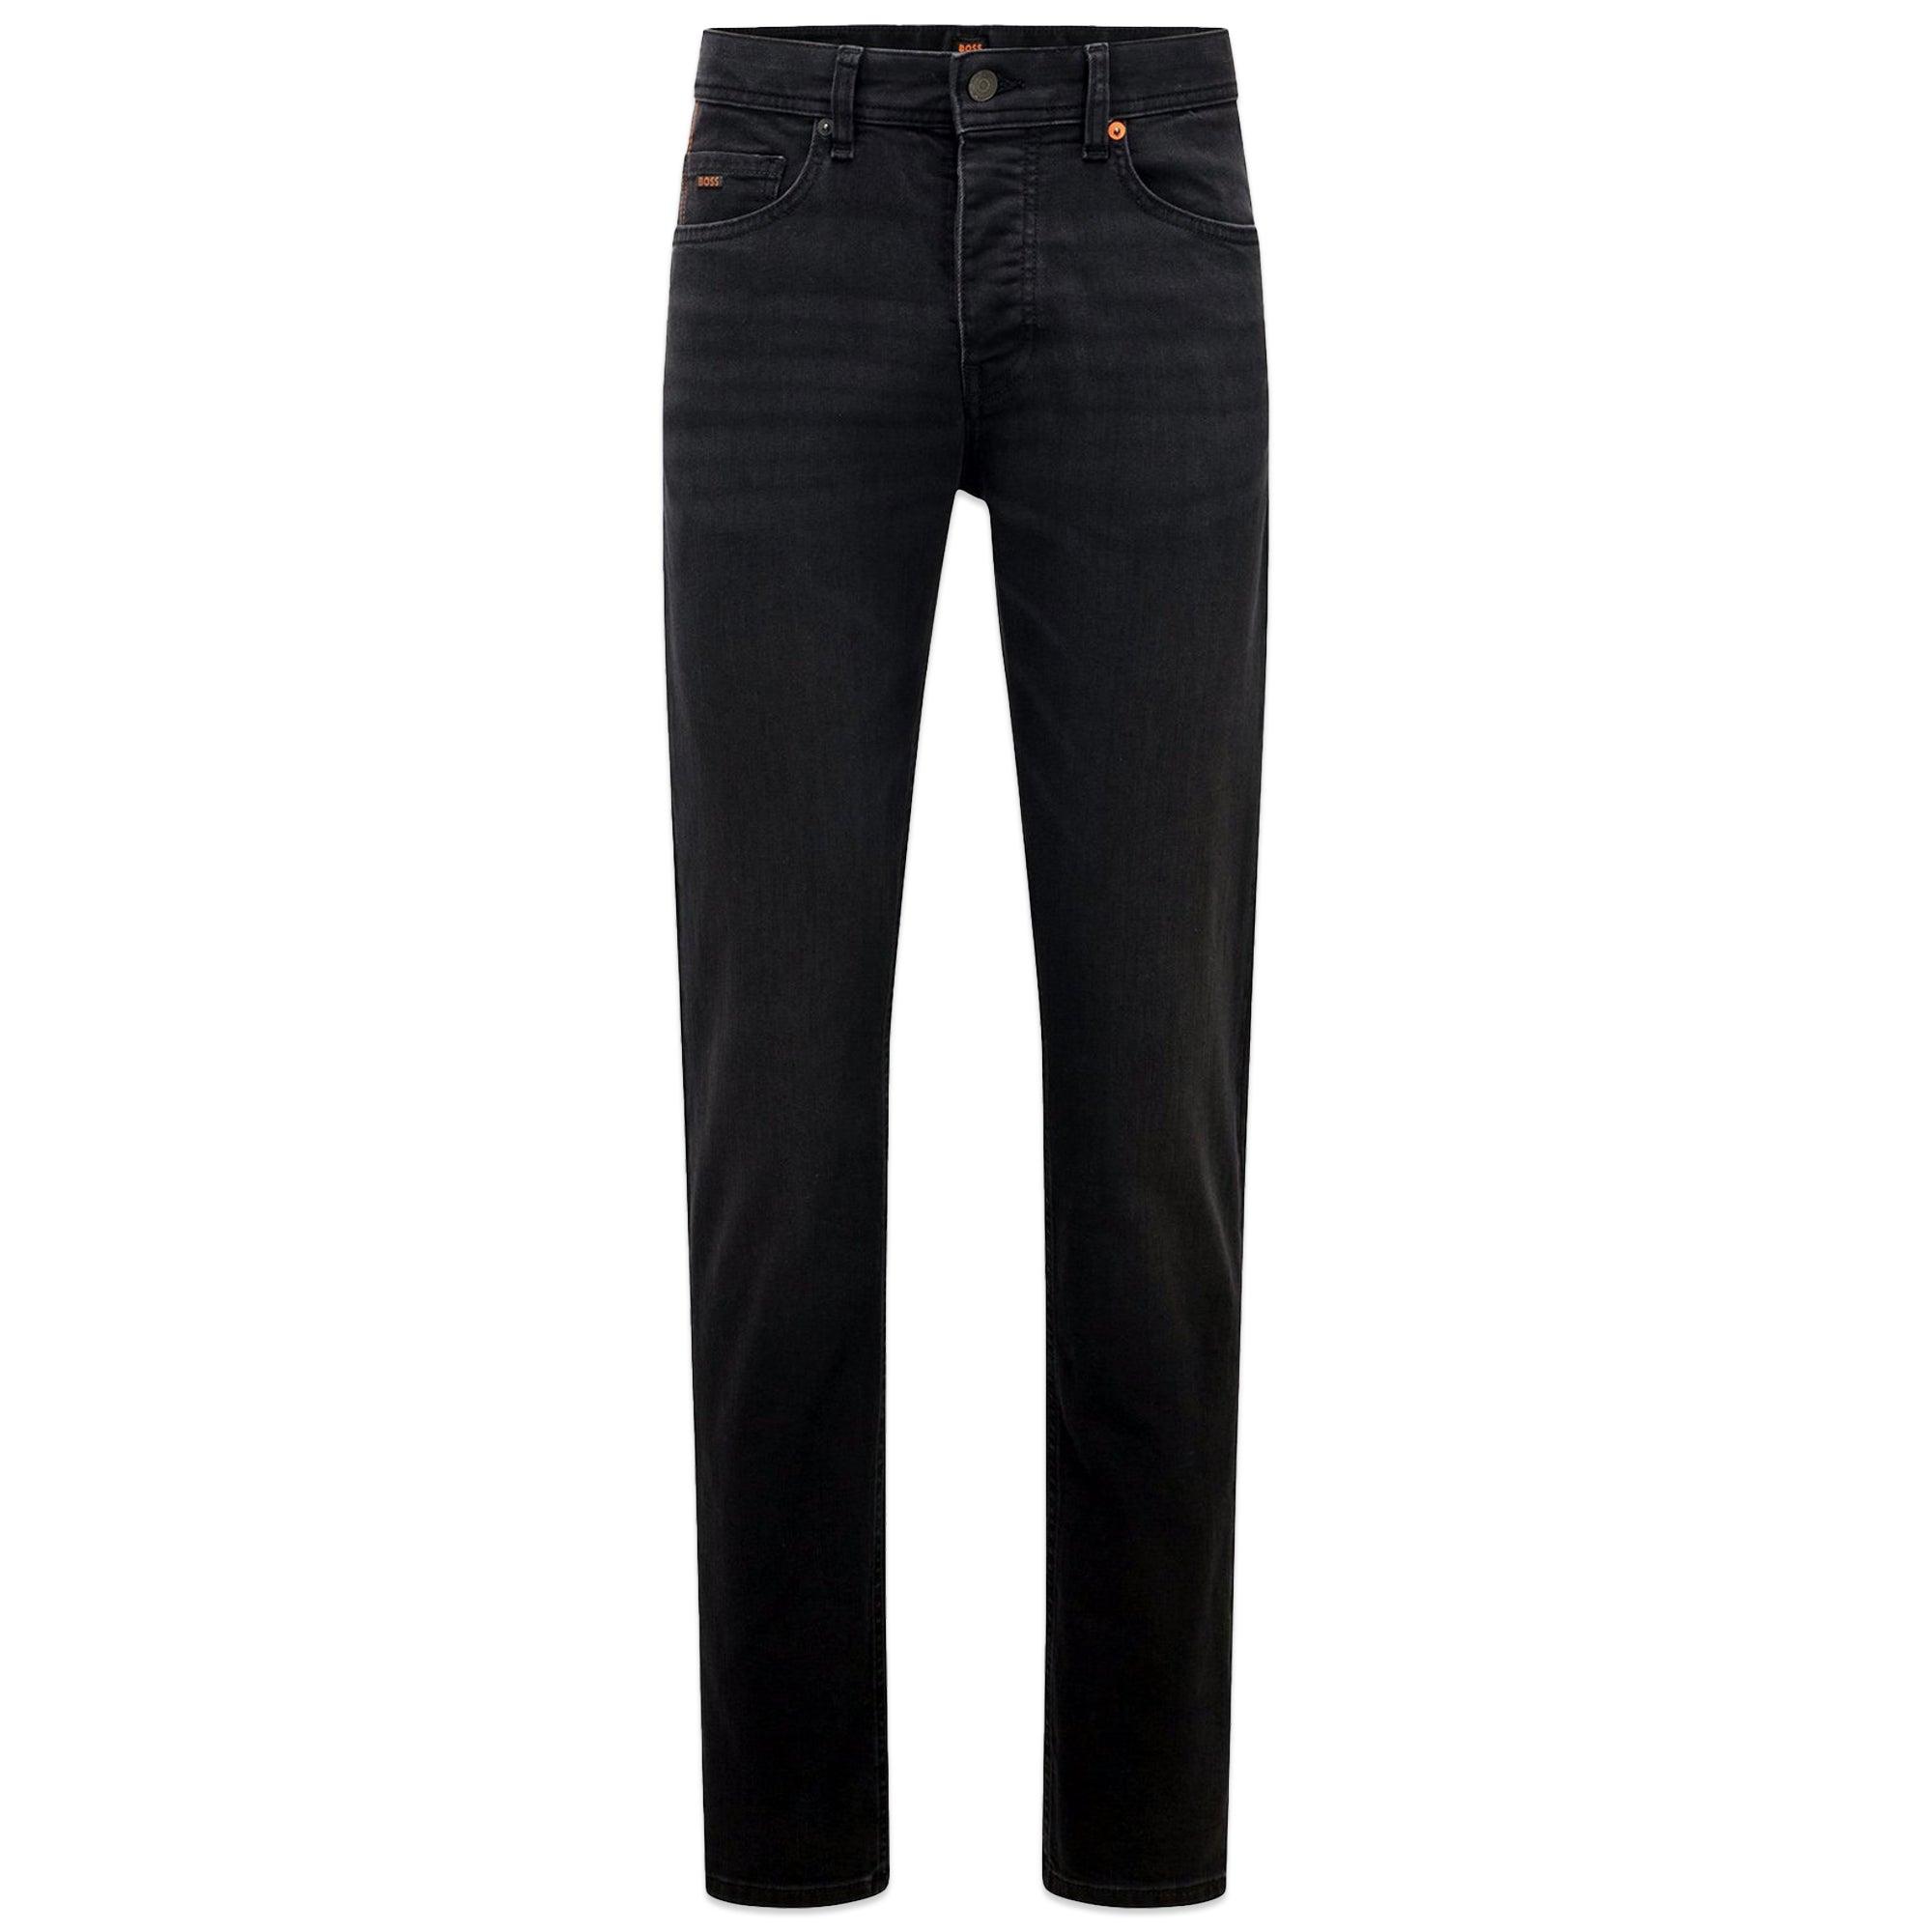 BOSS by HUGO BOSS Delaware Slim Fit Jeans - Jet Black Stretch for Men | Lyst